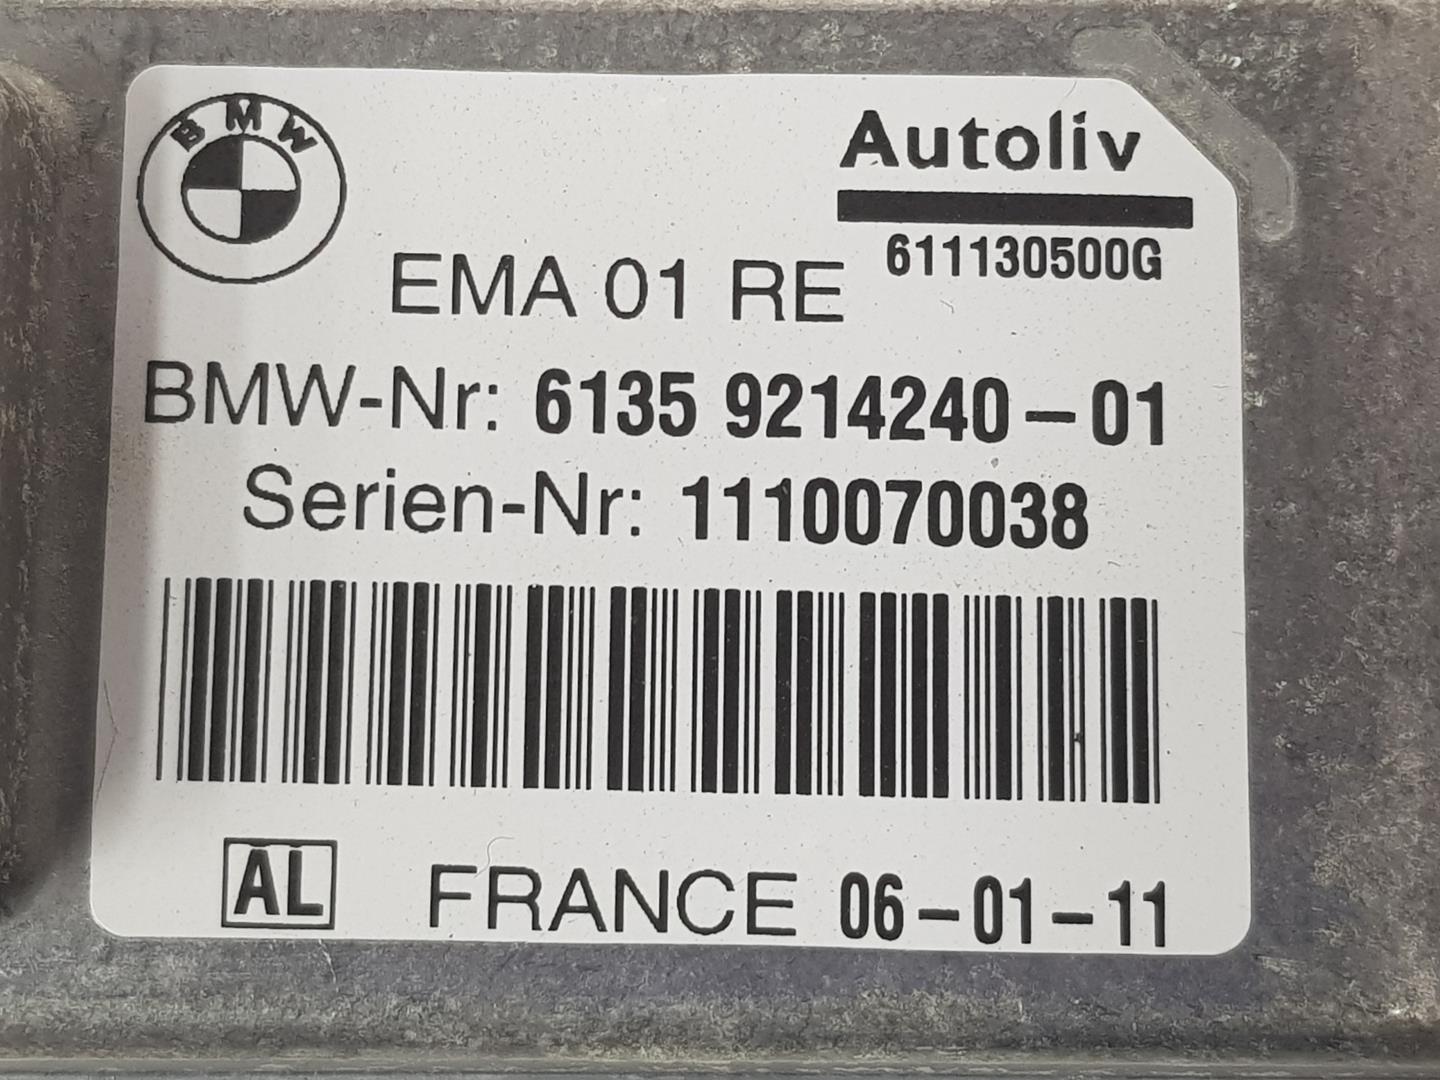 BMW 7 Series F01/F02 (2008-2015) Iné riadiace jednotky 61359214240, 9214240 24857152